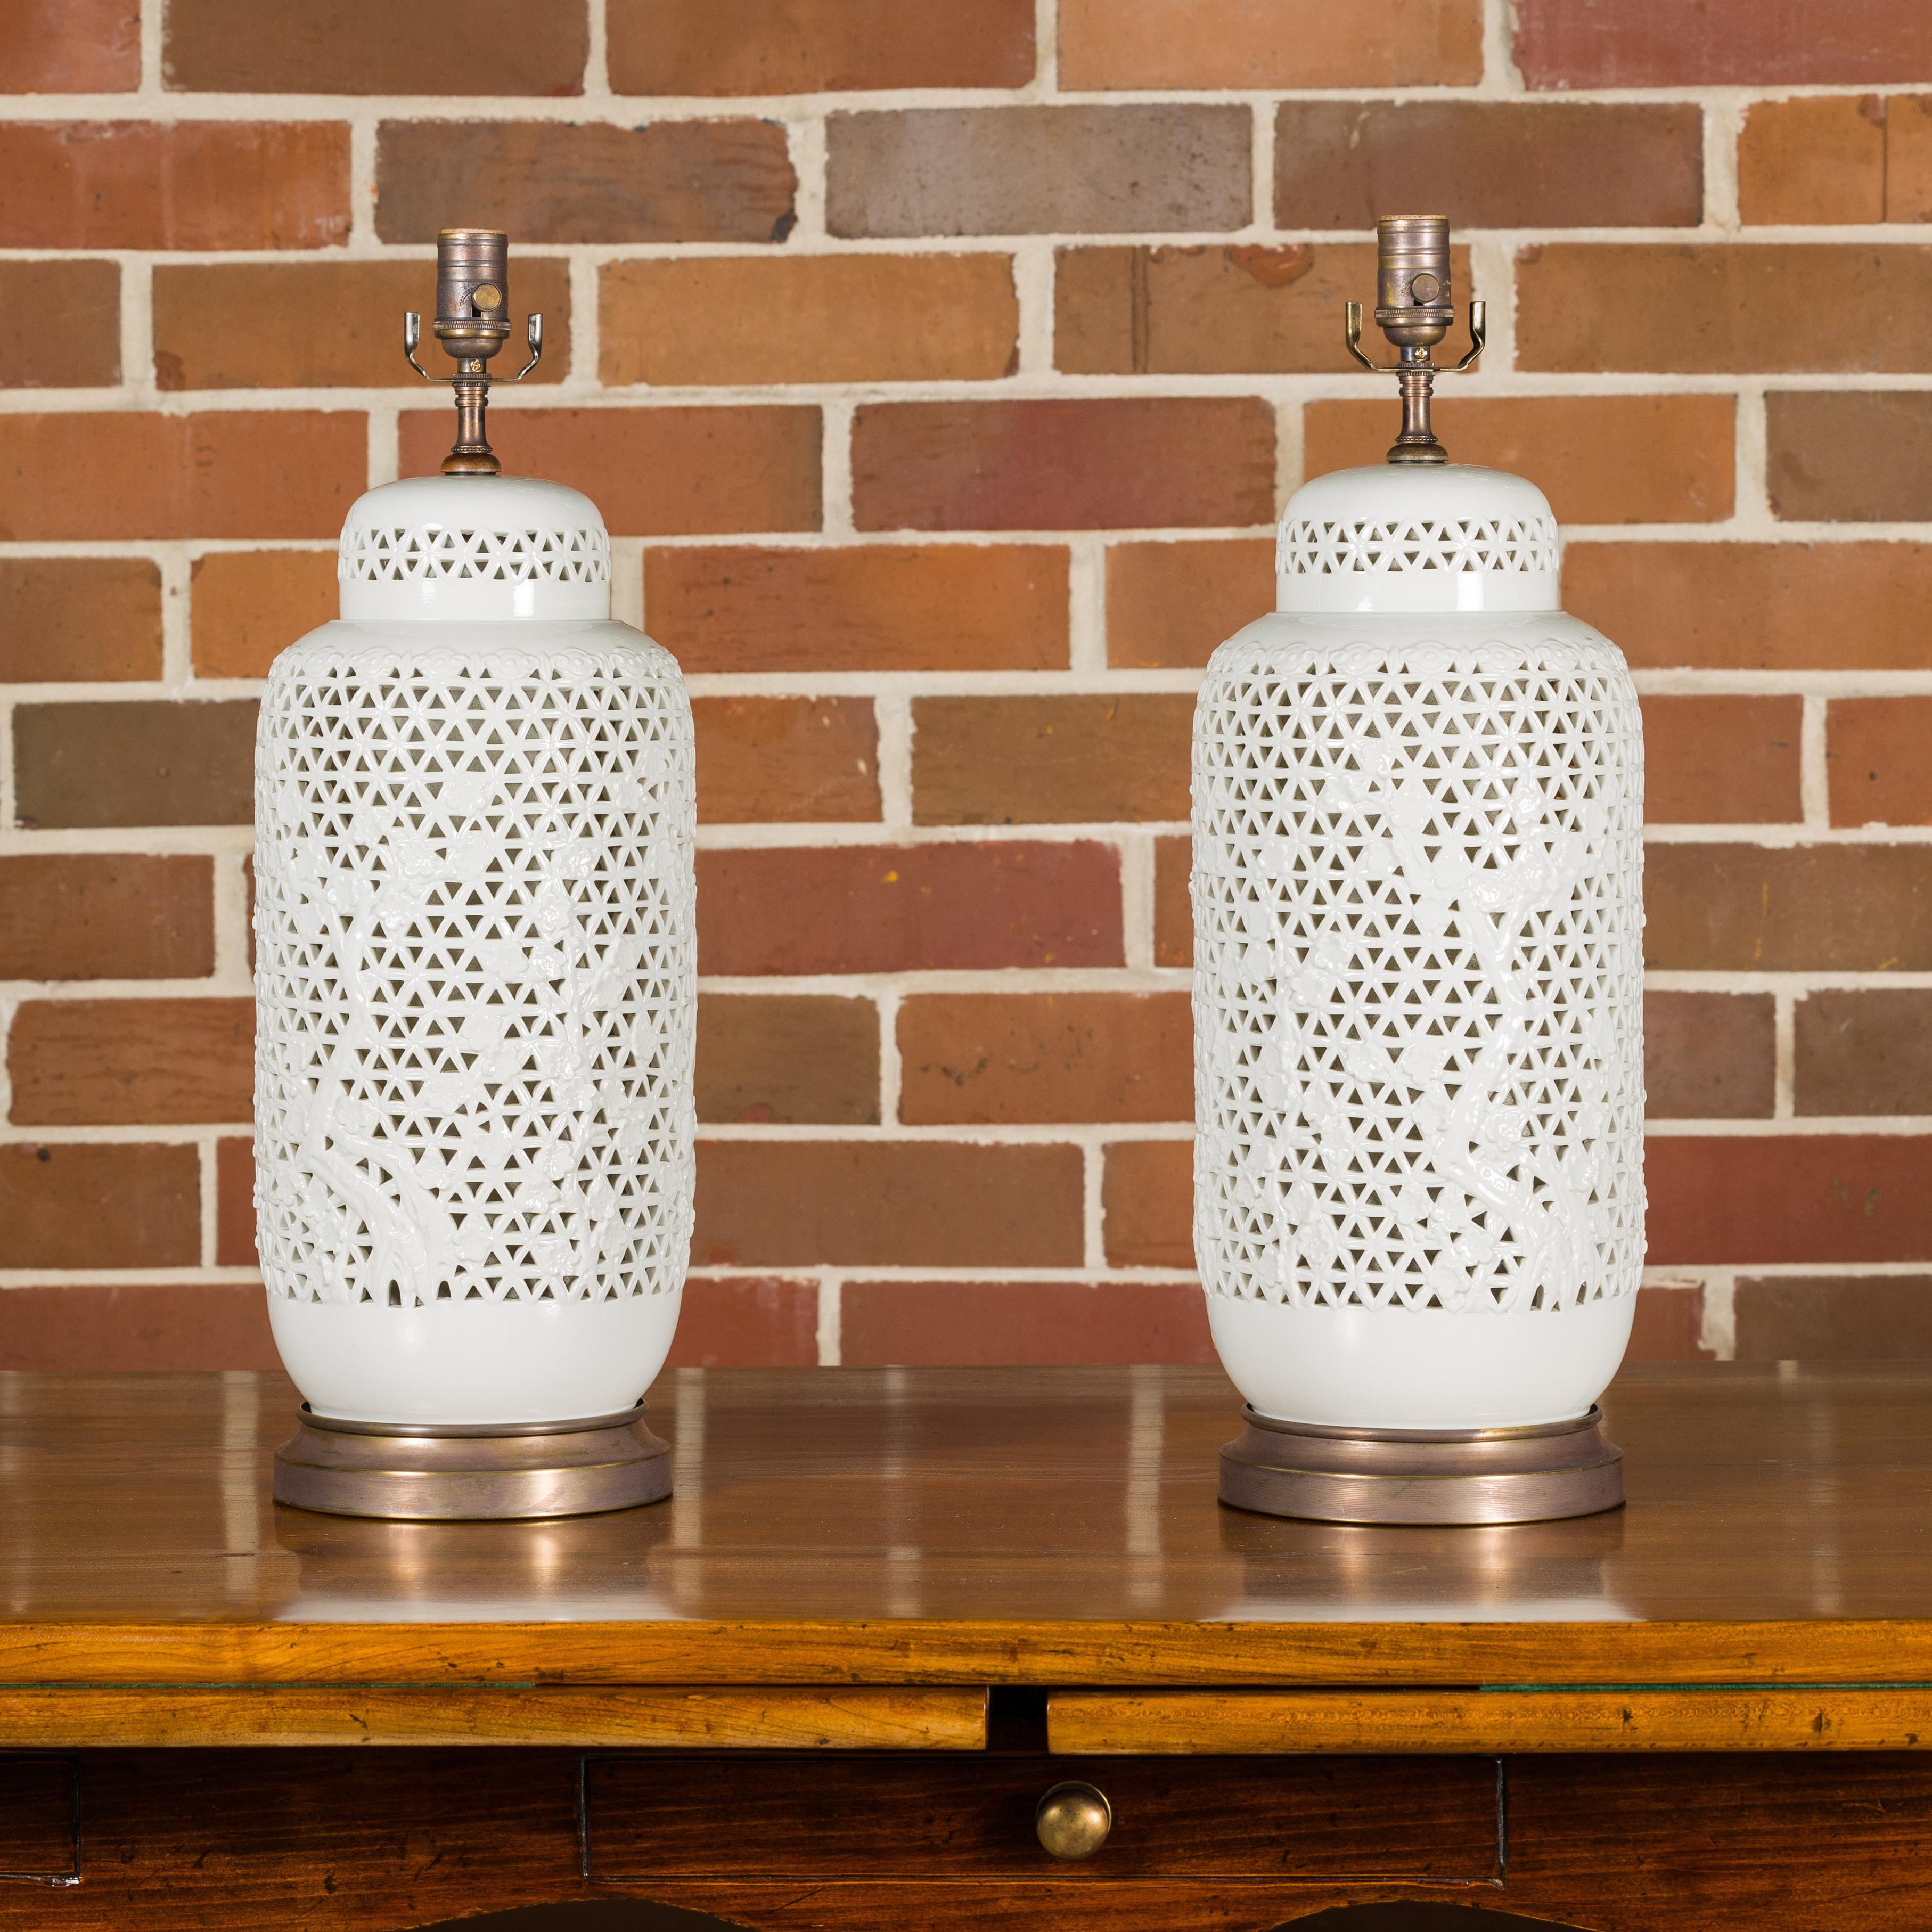 Paire de vases en porcelaine blanche à décor floral et ajouré du XIXe siècle transformés en lampes de table câblées pour les États-Unis et montées sur des bases circulaires. Admirez le charme intemporel de cette paire exquise de vases en porcelaine